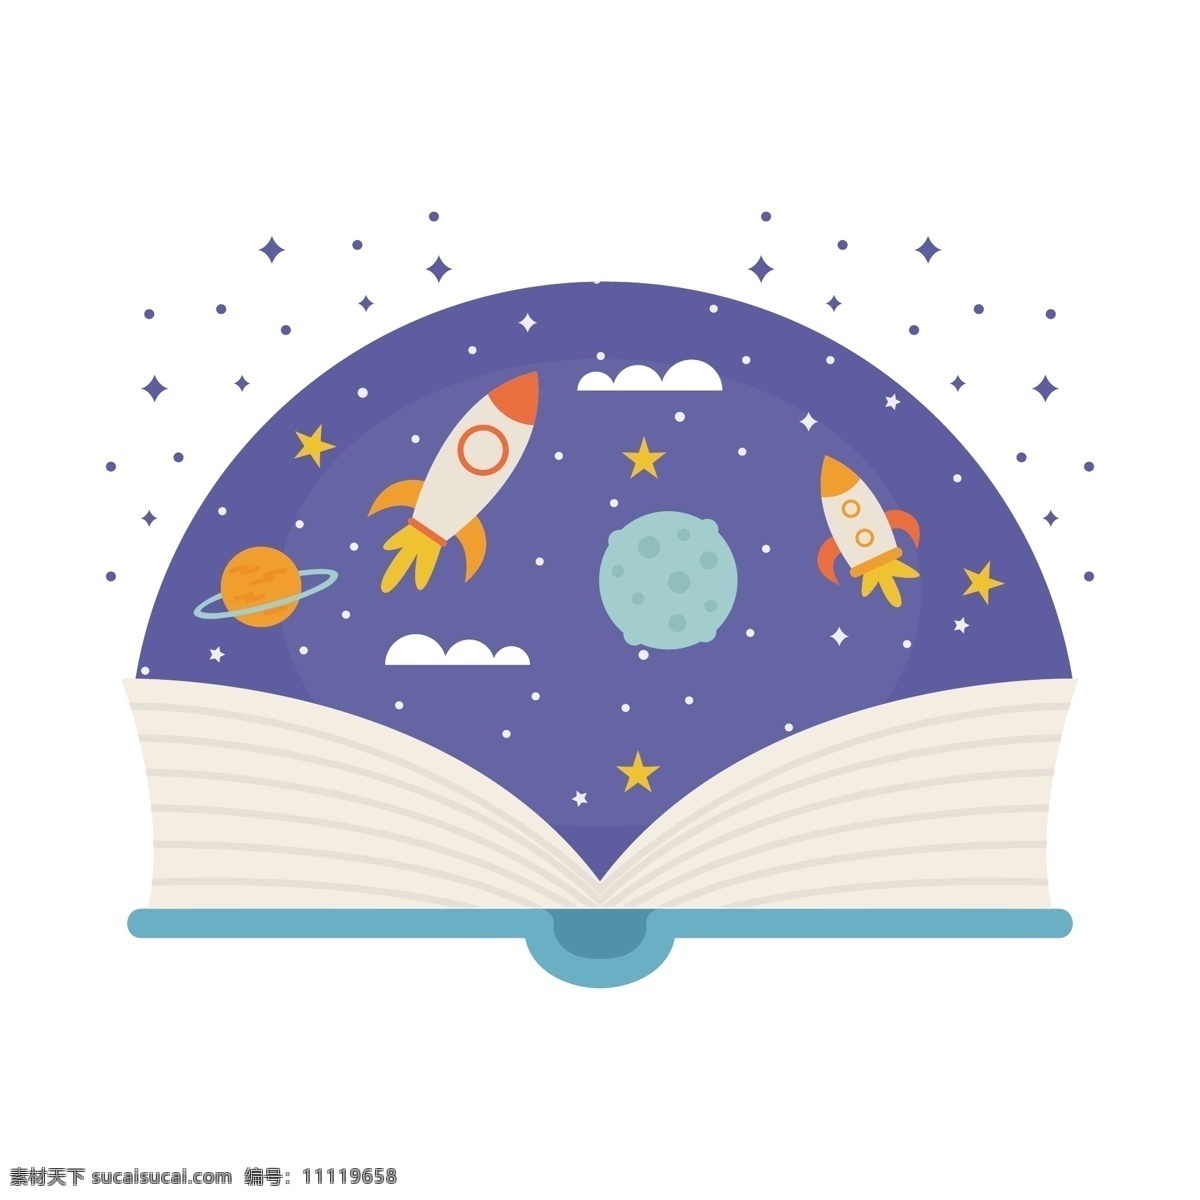 卡通书 里 太空 遨游 矢量 外太空 飞船 火箭 星球 银河系 宇宙 卡通书籍 打开的书籍 书里的太空 太空遨游 遨游太空